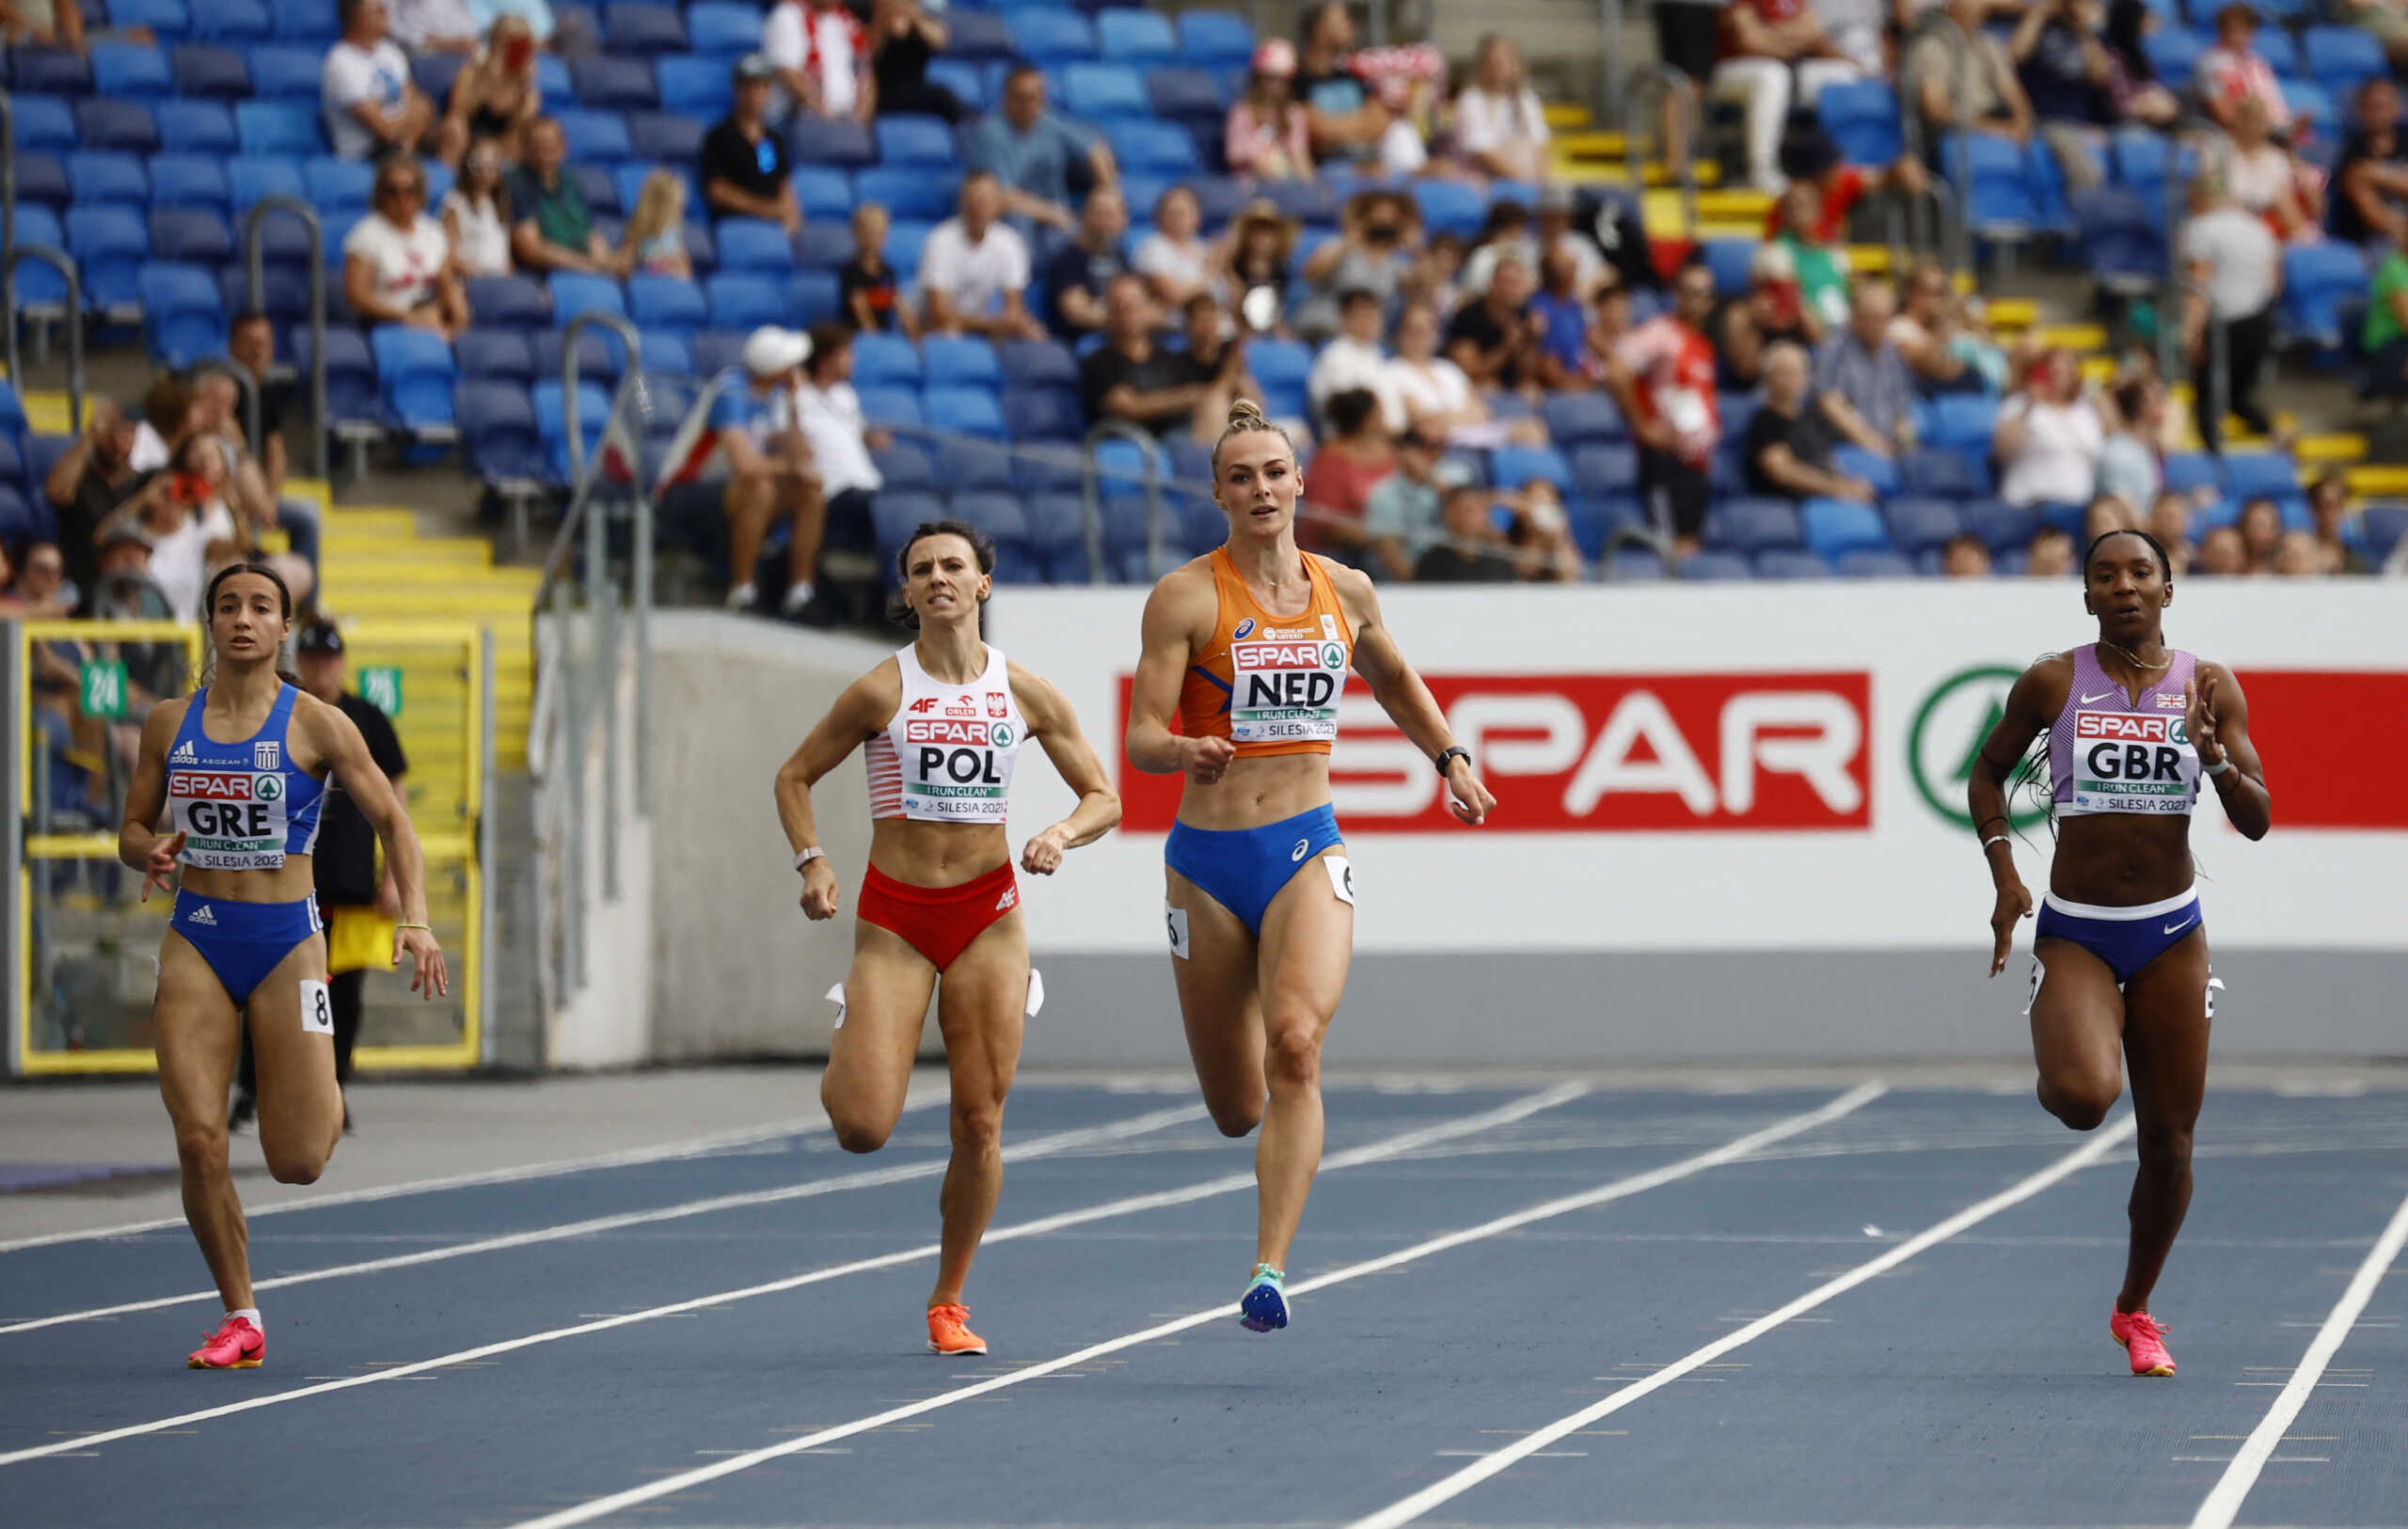 Η φοβερή Πολυνίκη Εμμανουηλίδου έγραψε ιστορία στα 200μ. στο ευρωπαϊκό πρωτάθλημα ομάδων